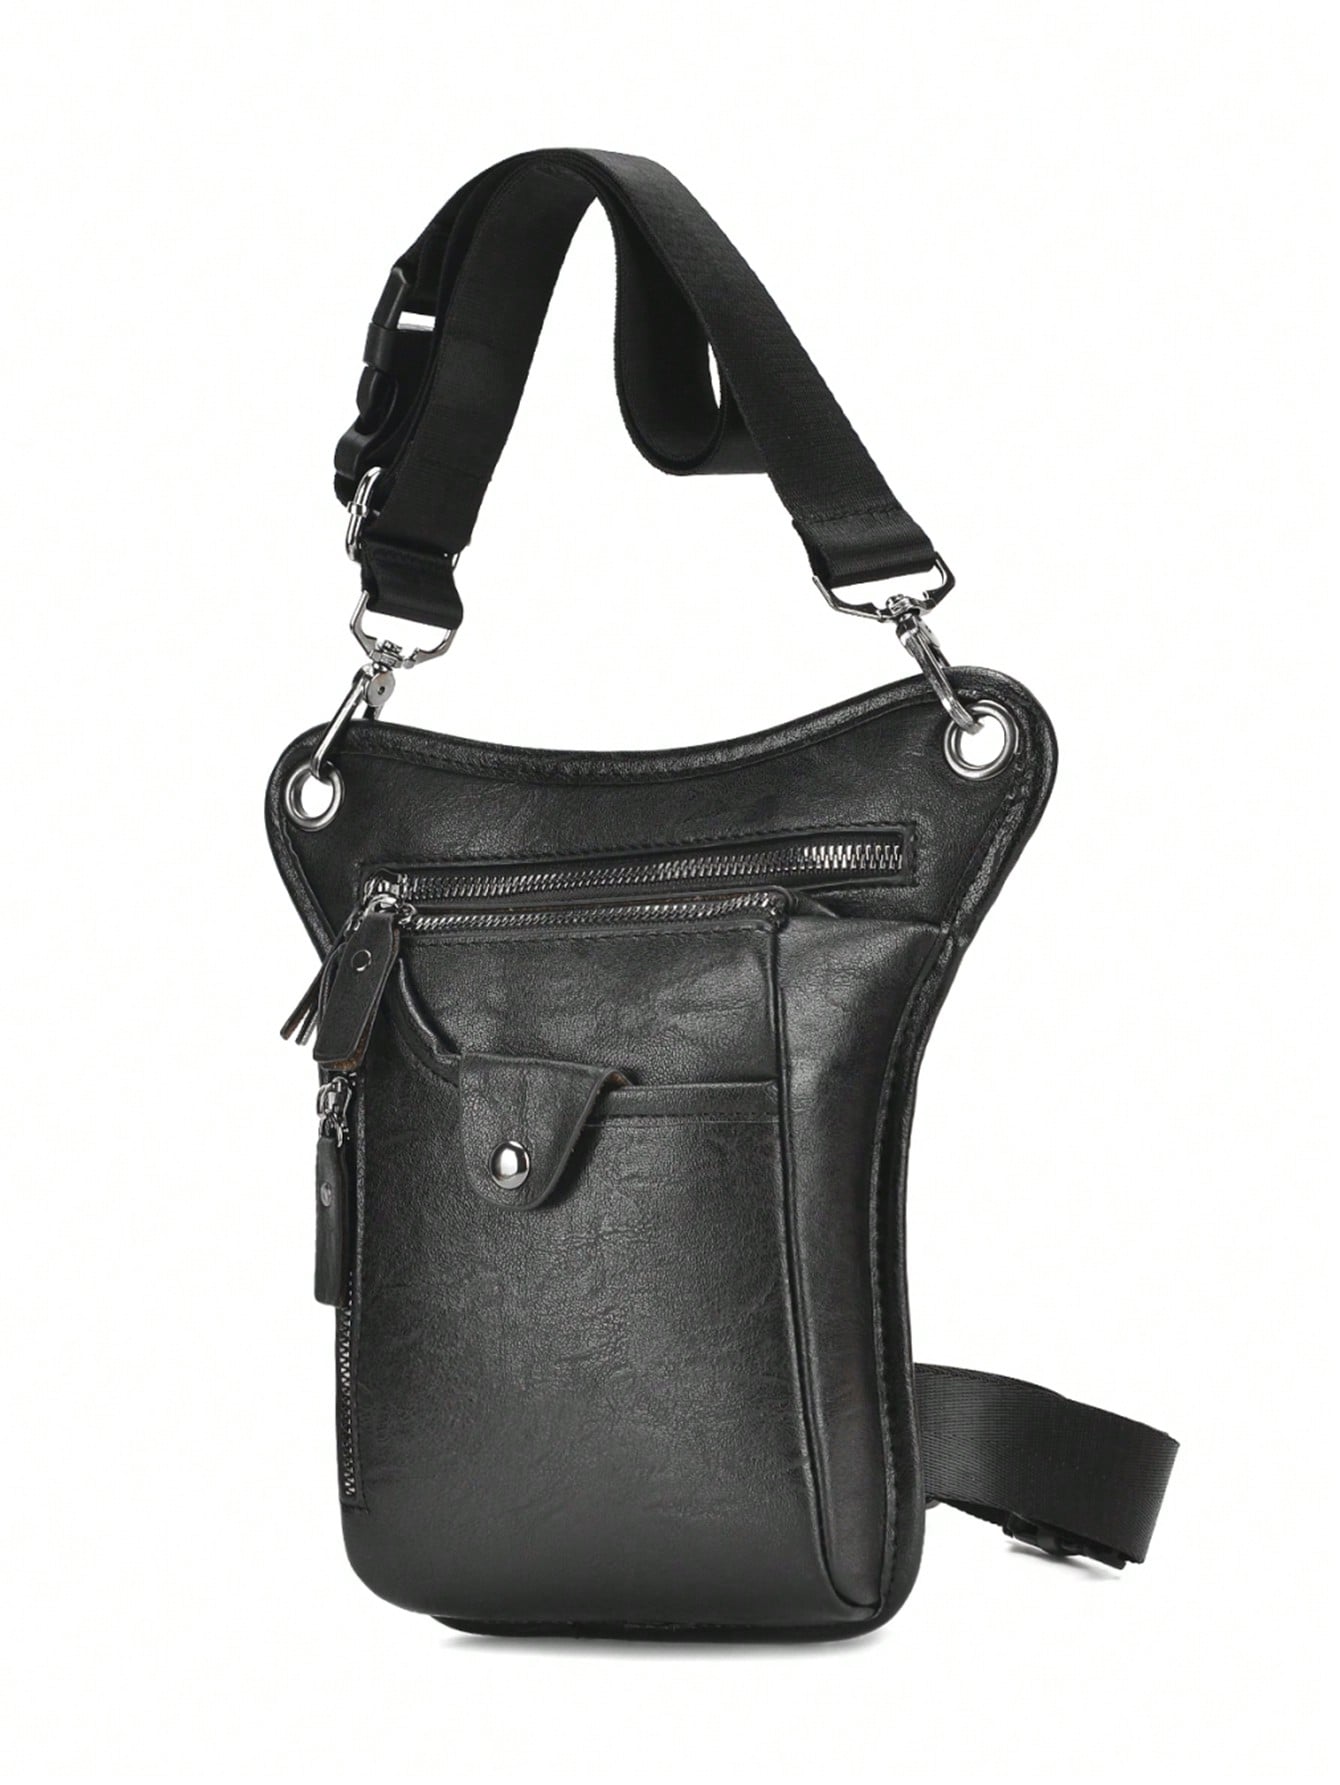 Мужская поясная сумка из искусственной кожи сплошного цвета в простом стиле с набедренной сумкой, черный